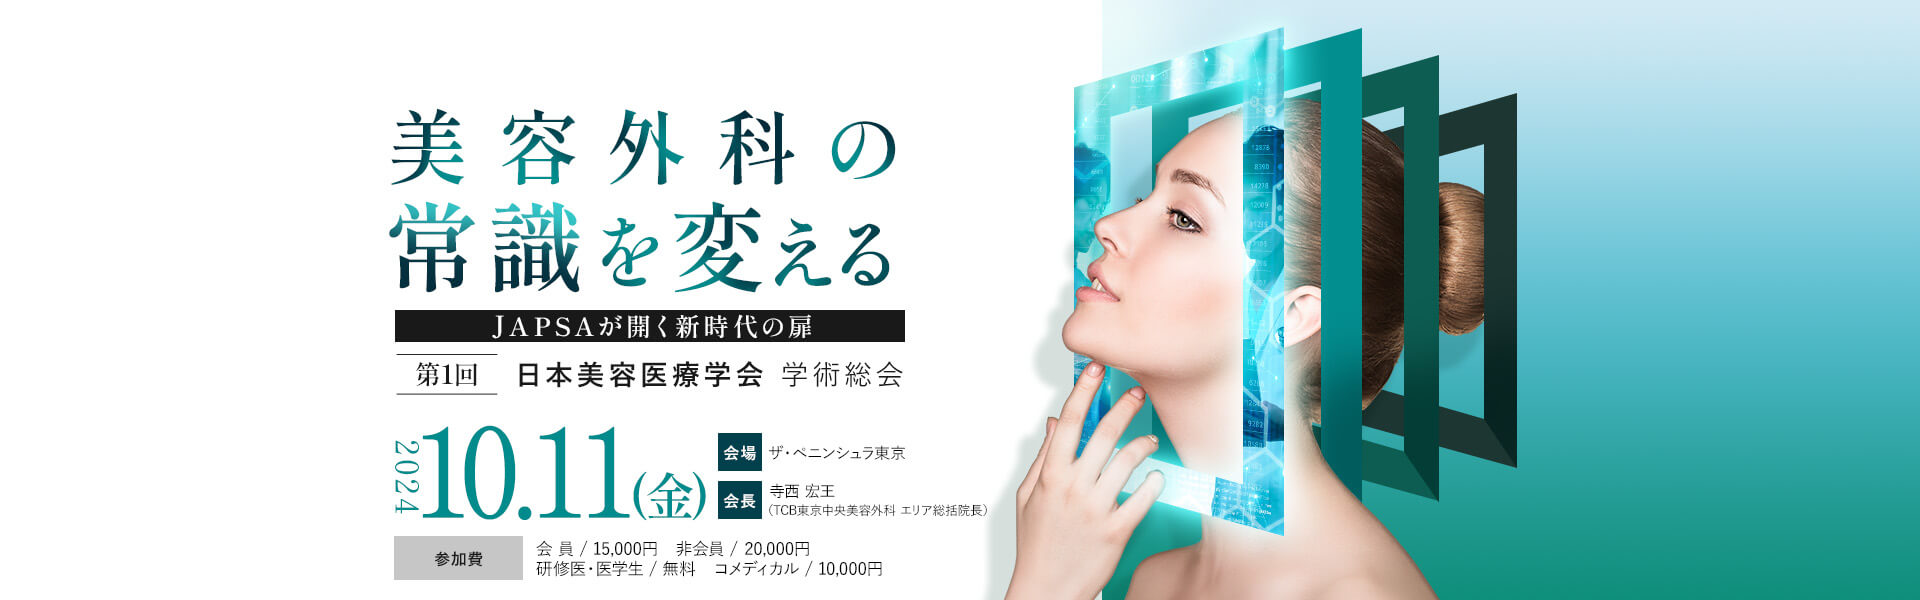 第1回 日本美容医療学会 学術総会